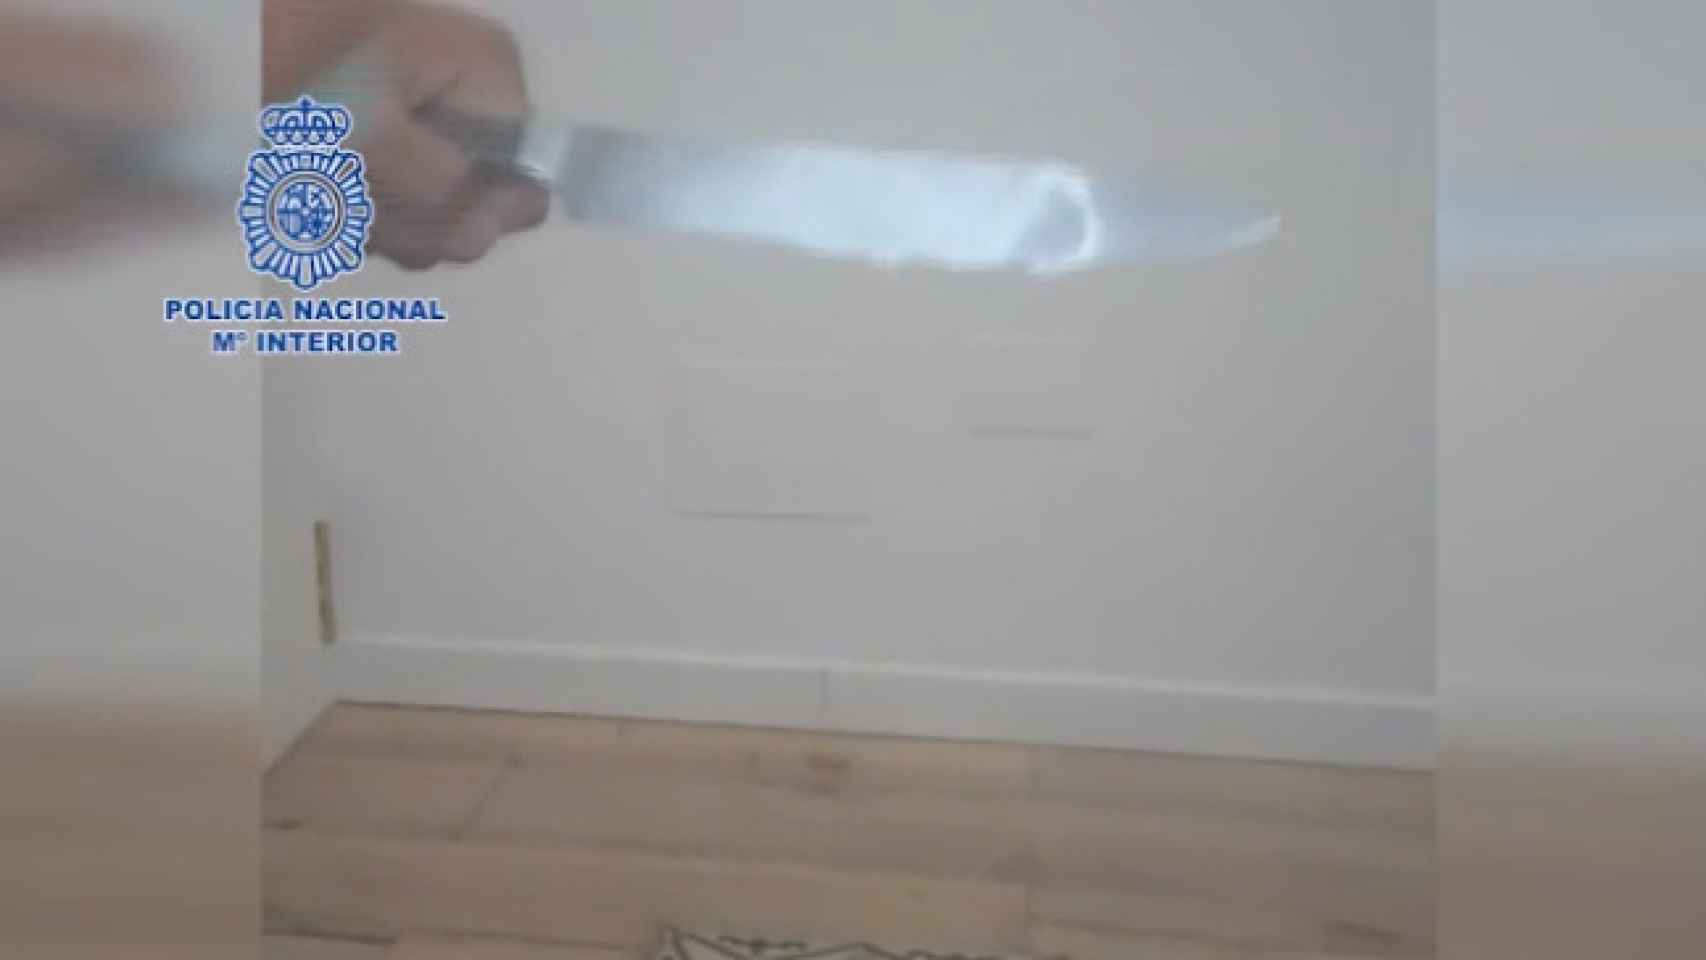 Imagen de un cuchillo que los supuestos secuestradores hacían llegar a la víctima de la extorsión como amenaza.